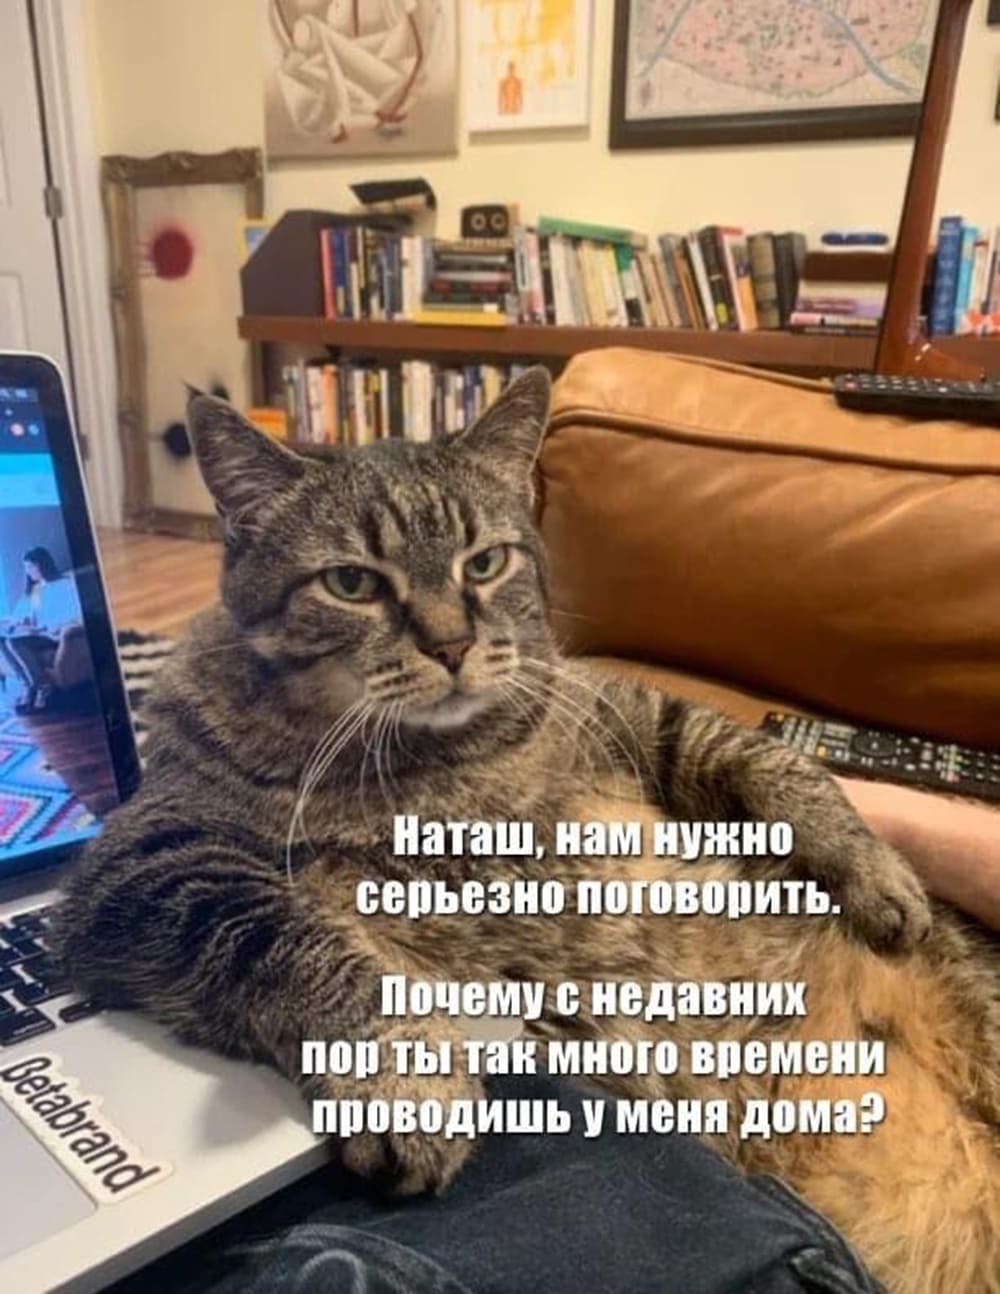 Мемы про котов Наташ, нам нужно серьезно поговорить фото